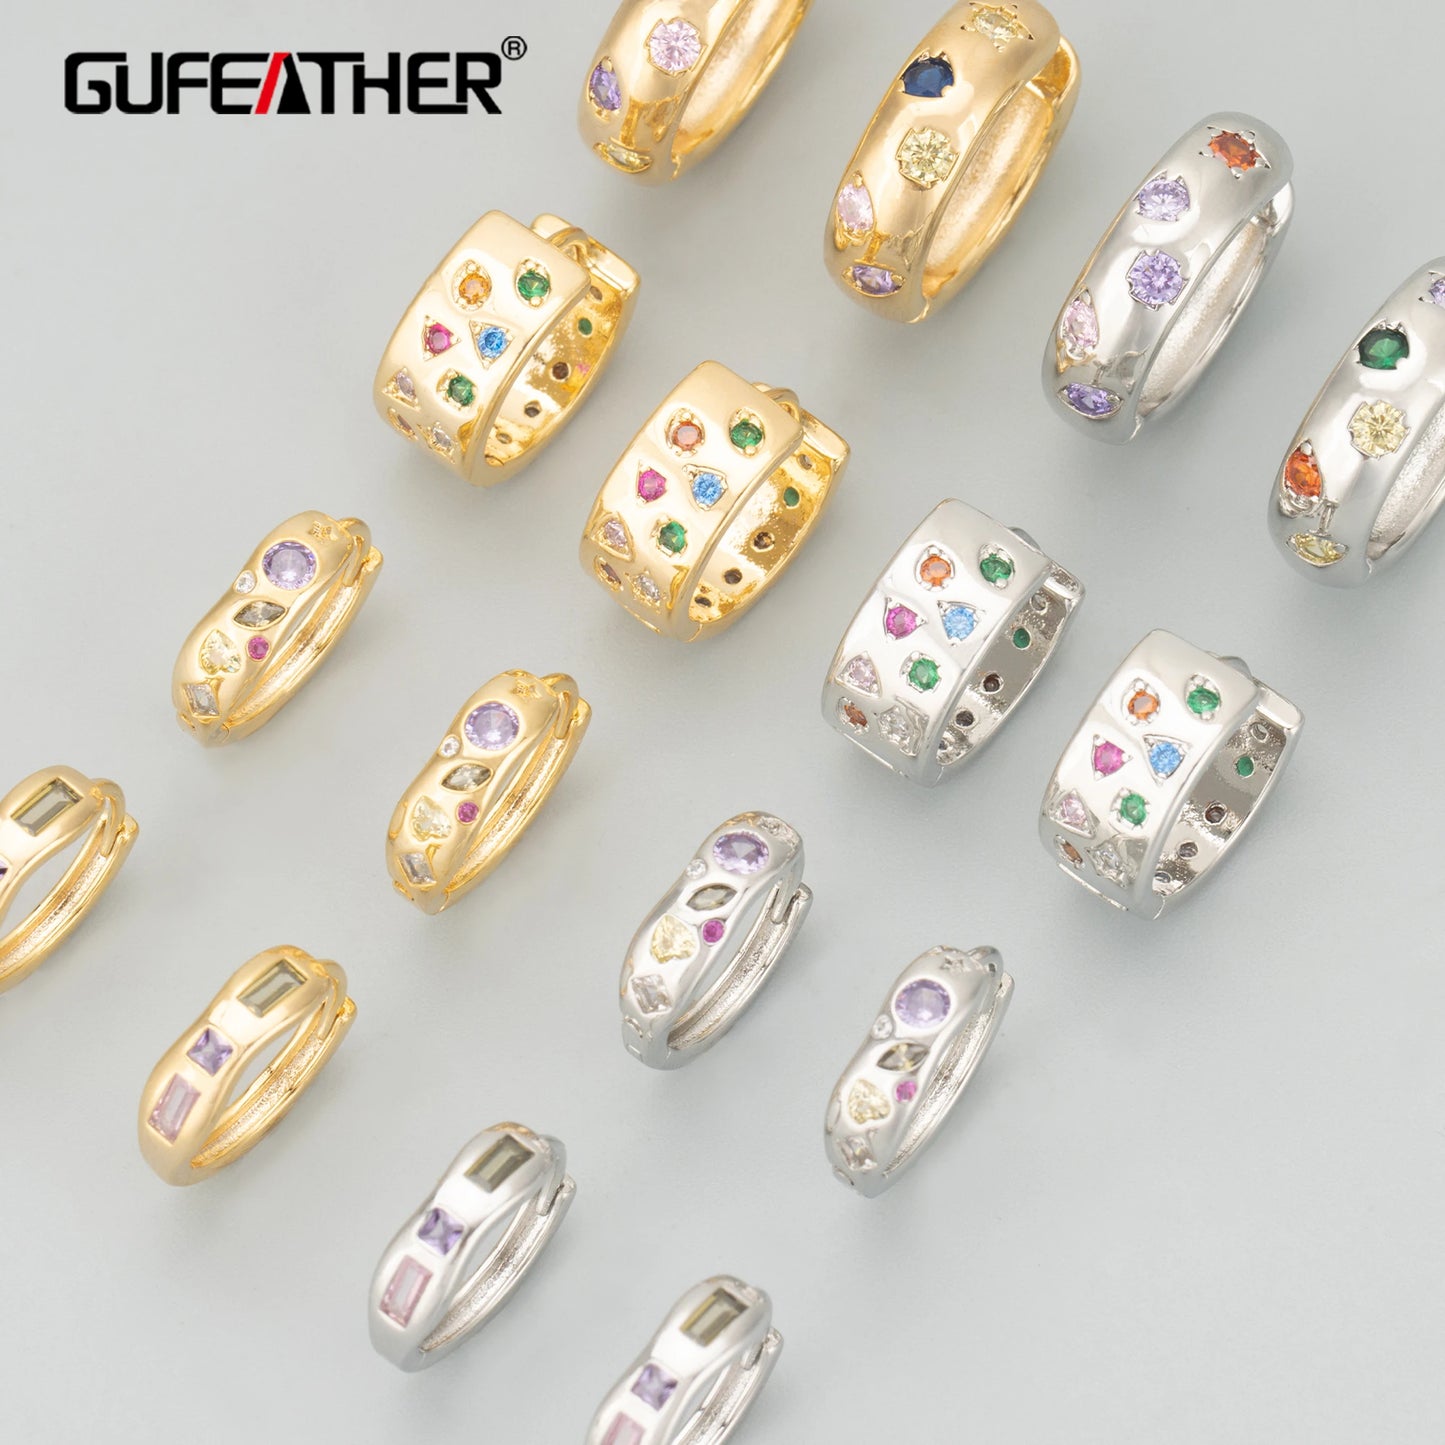 GUFEATHER MC93,earrings for women,18k gold rhodium plated,copper,charms,hoop ear buckle,drop earrings,fashion jewelry,6pcs/lot